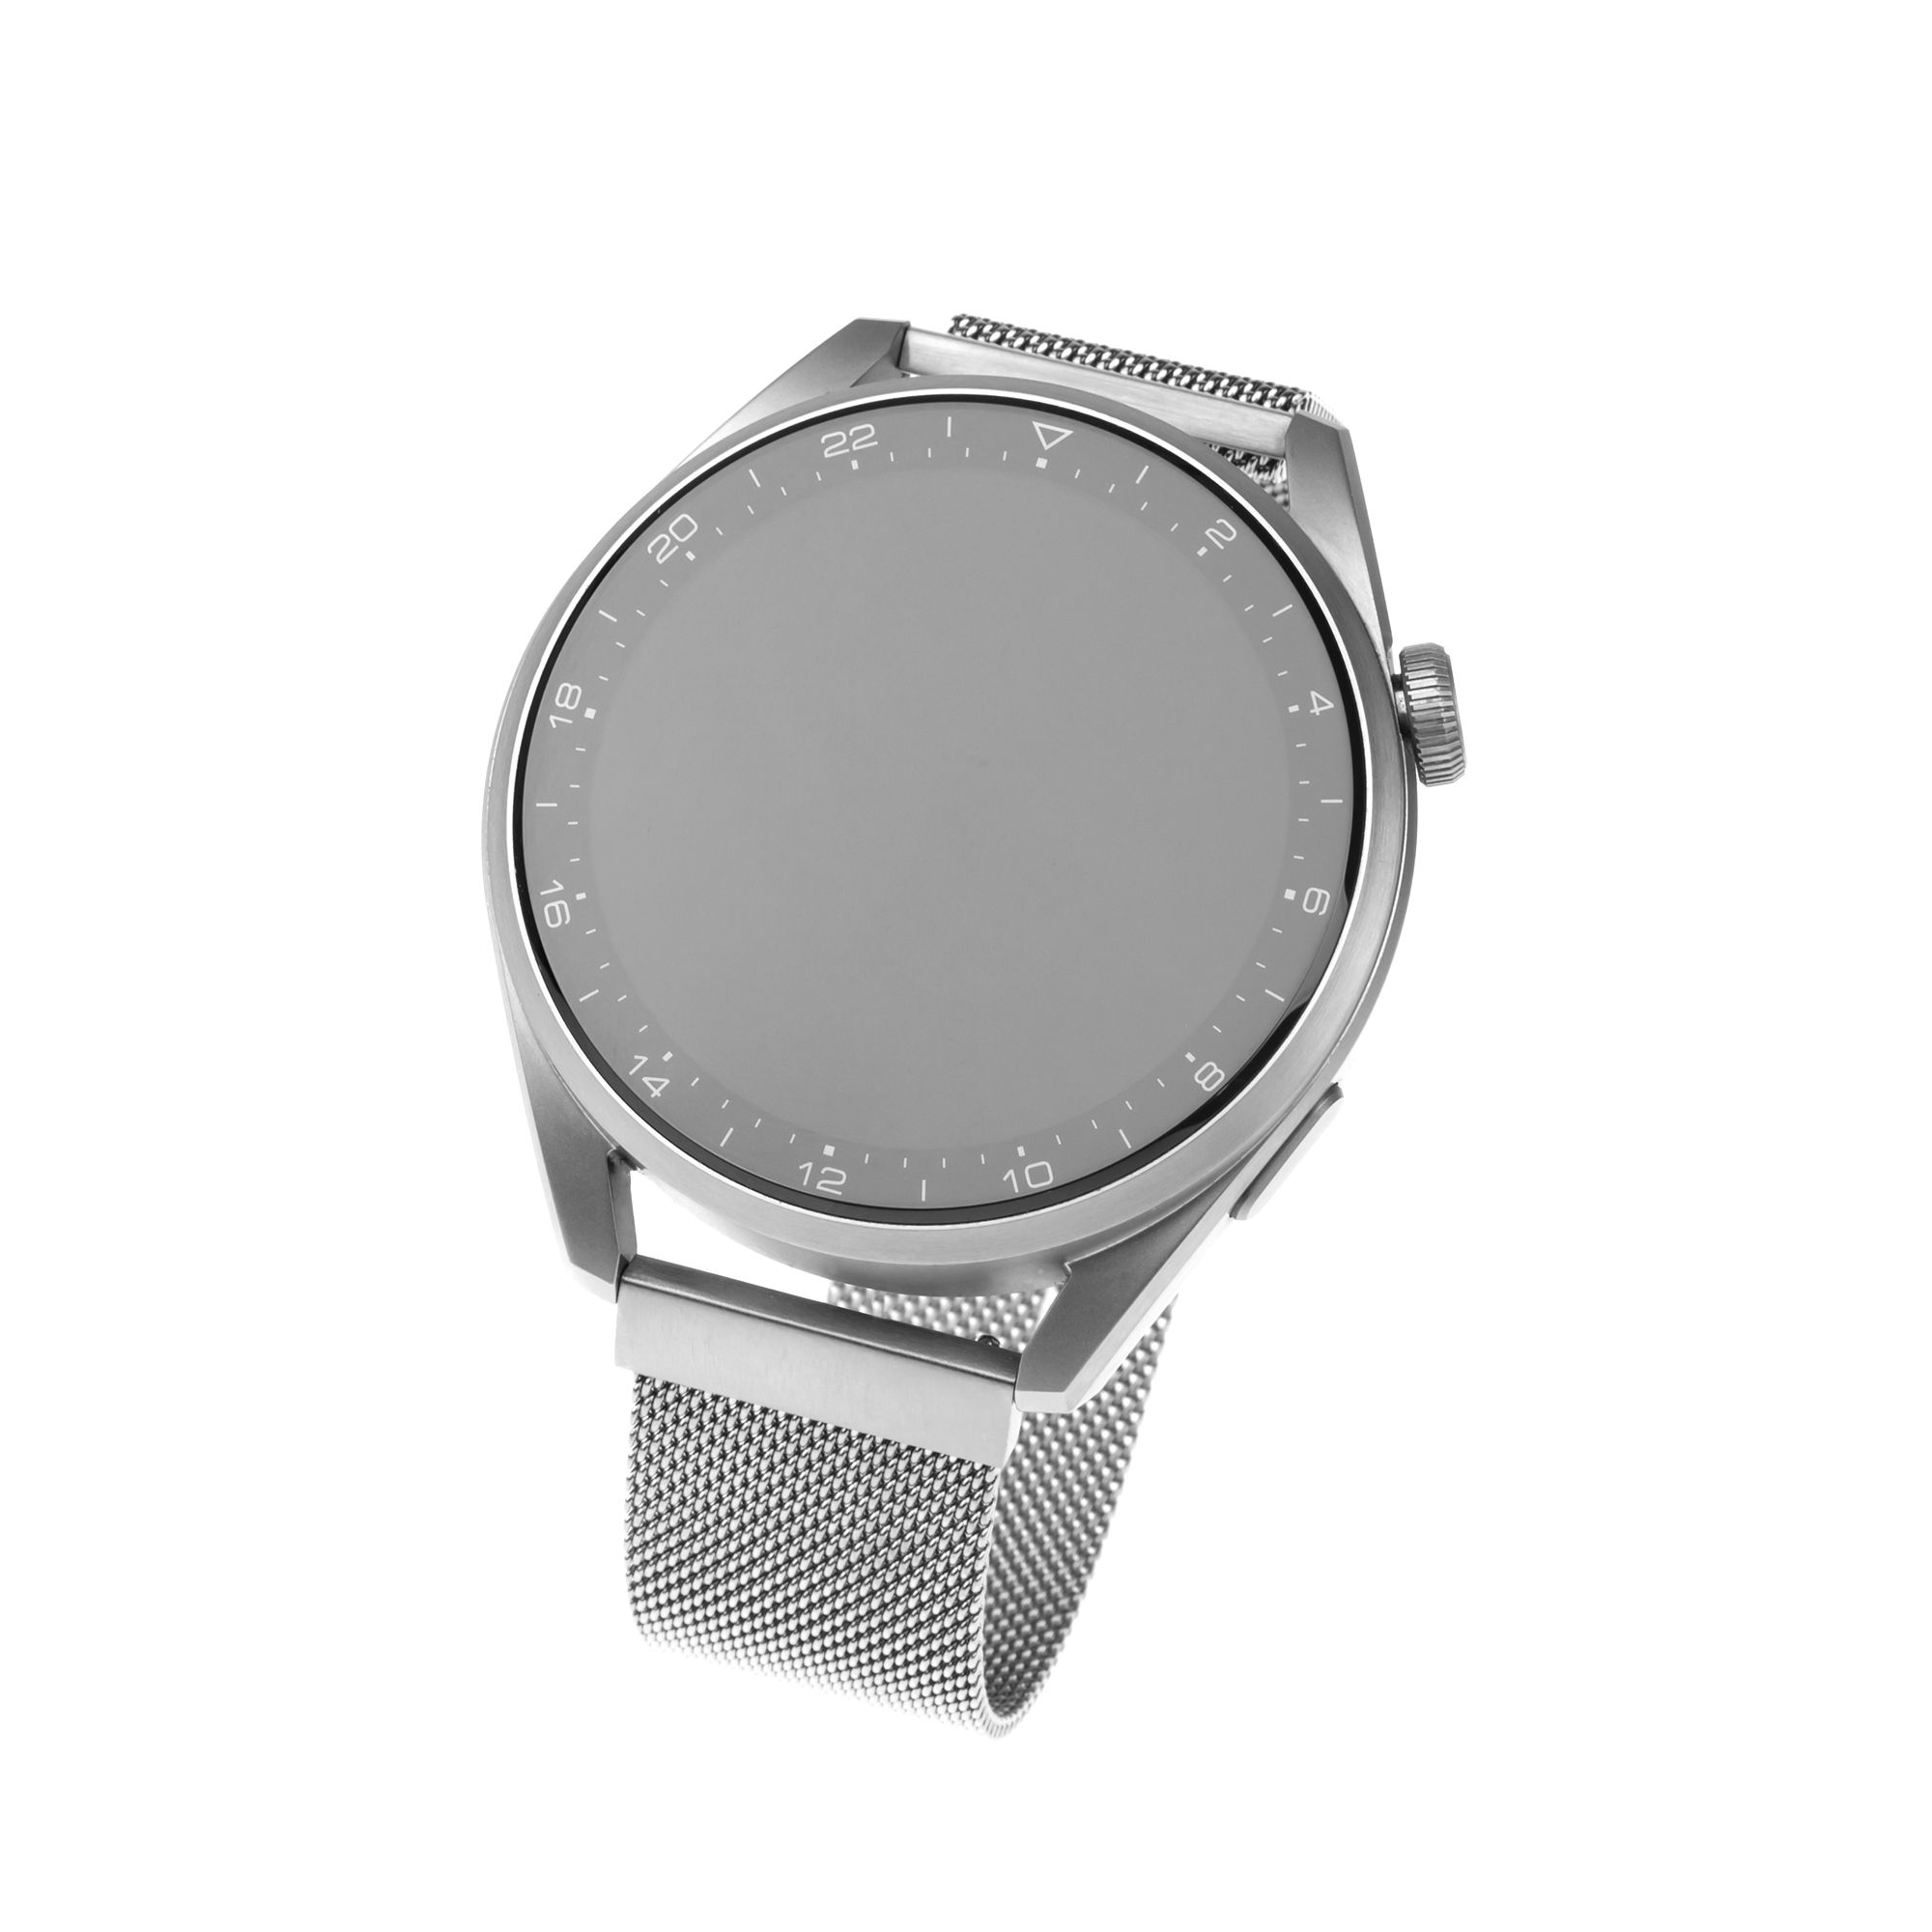 Síťovaný nerezový řemínek Mesh Strap s Quick Release 22mm pro smartwatch, stříbrný